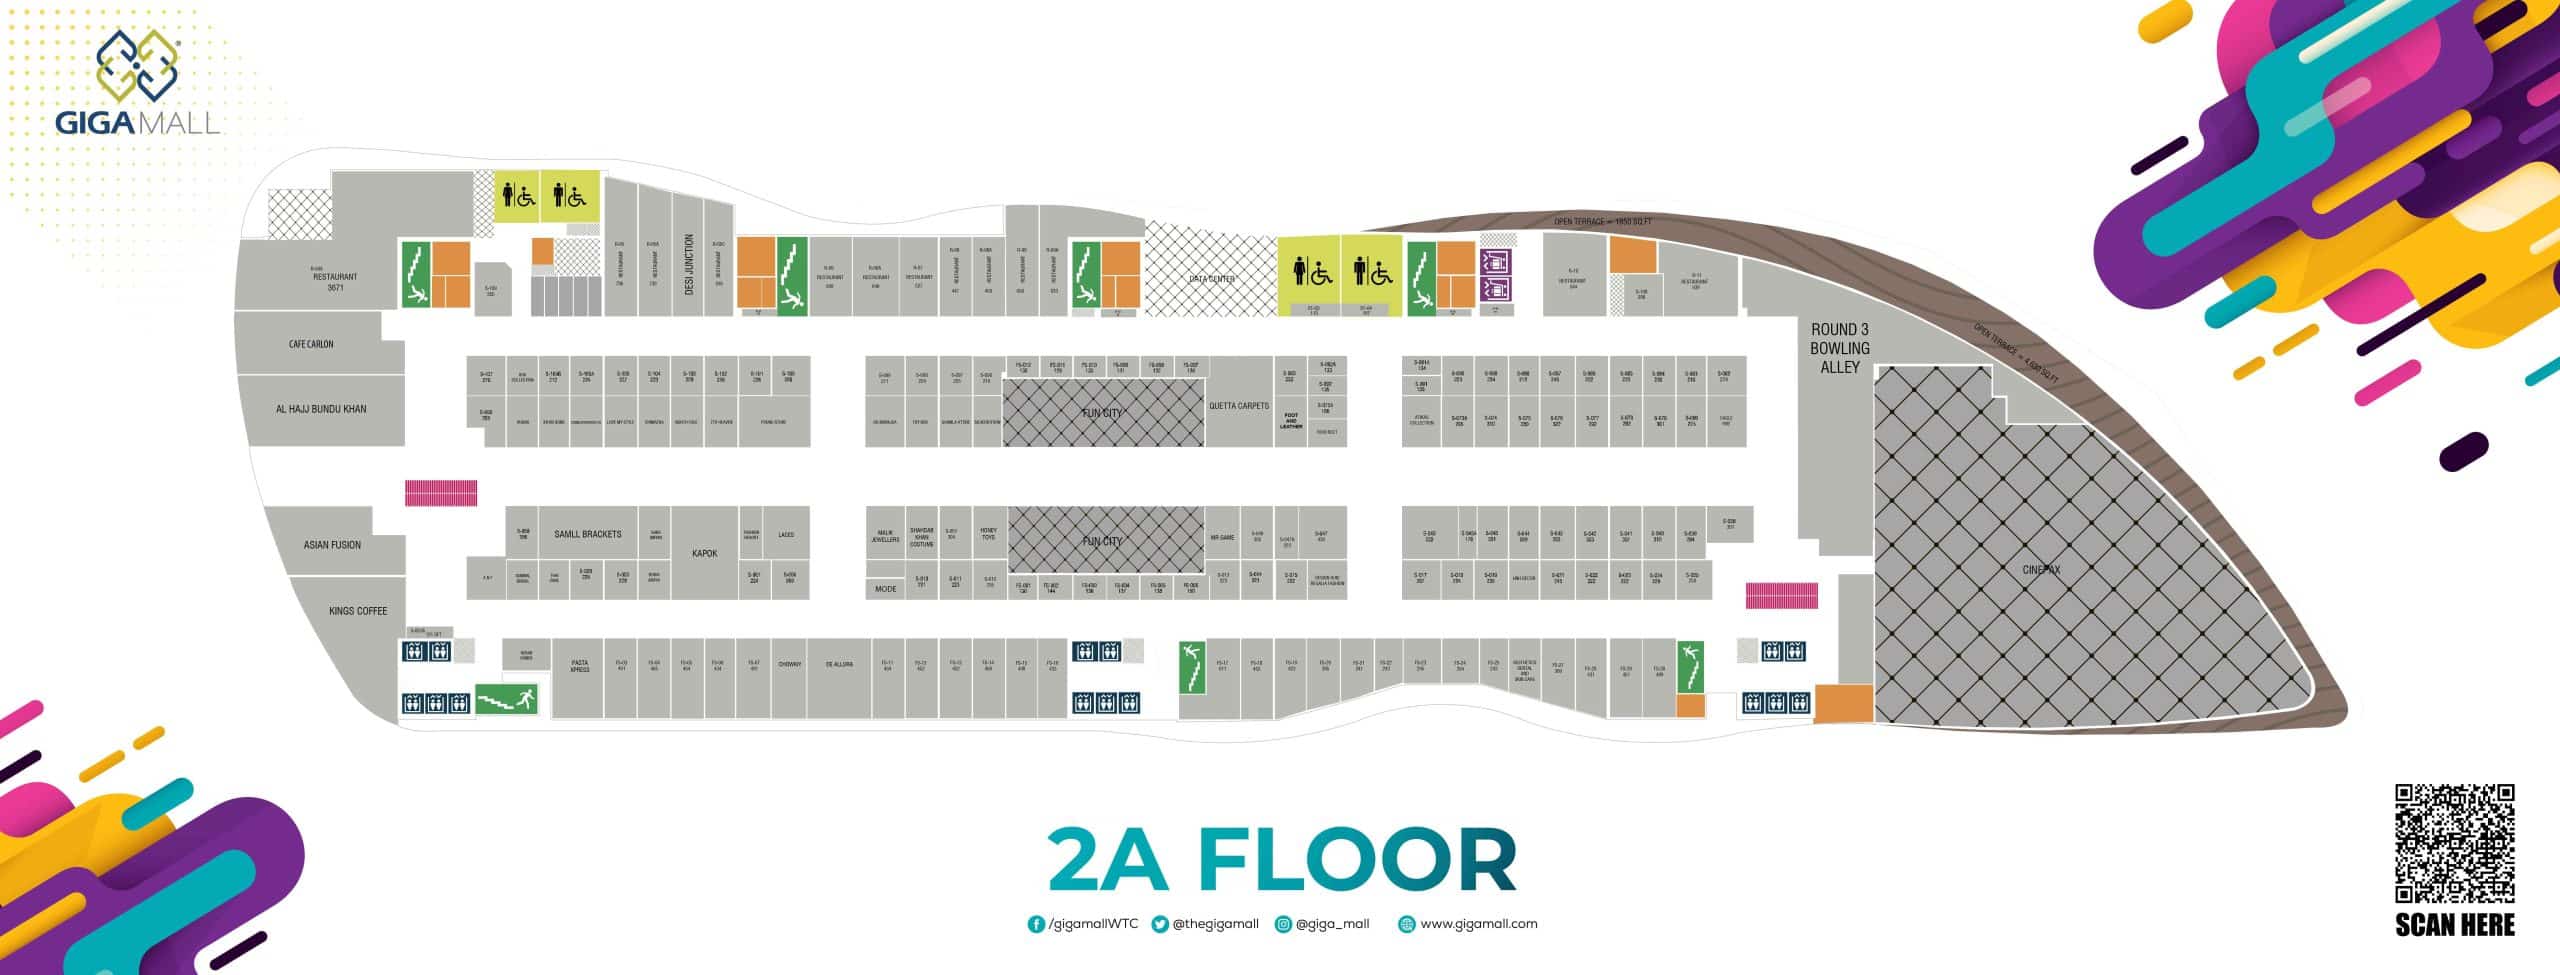 2A Floor Map Giga Mall